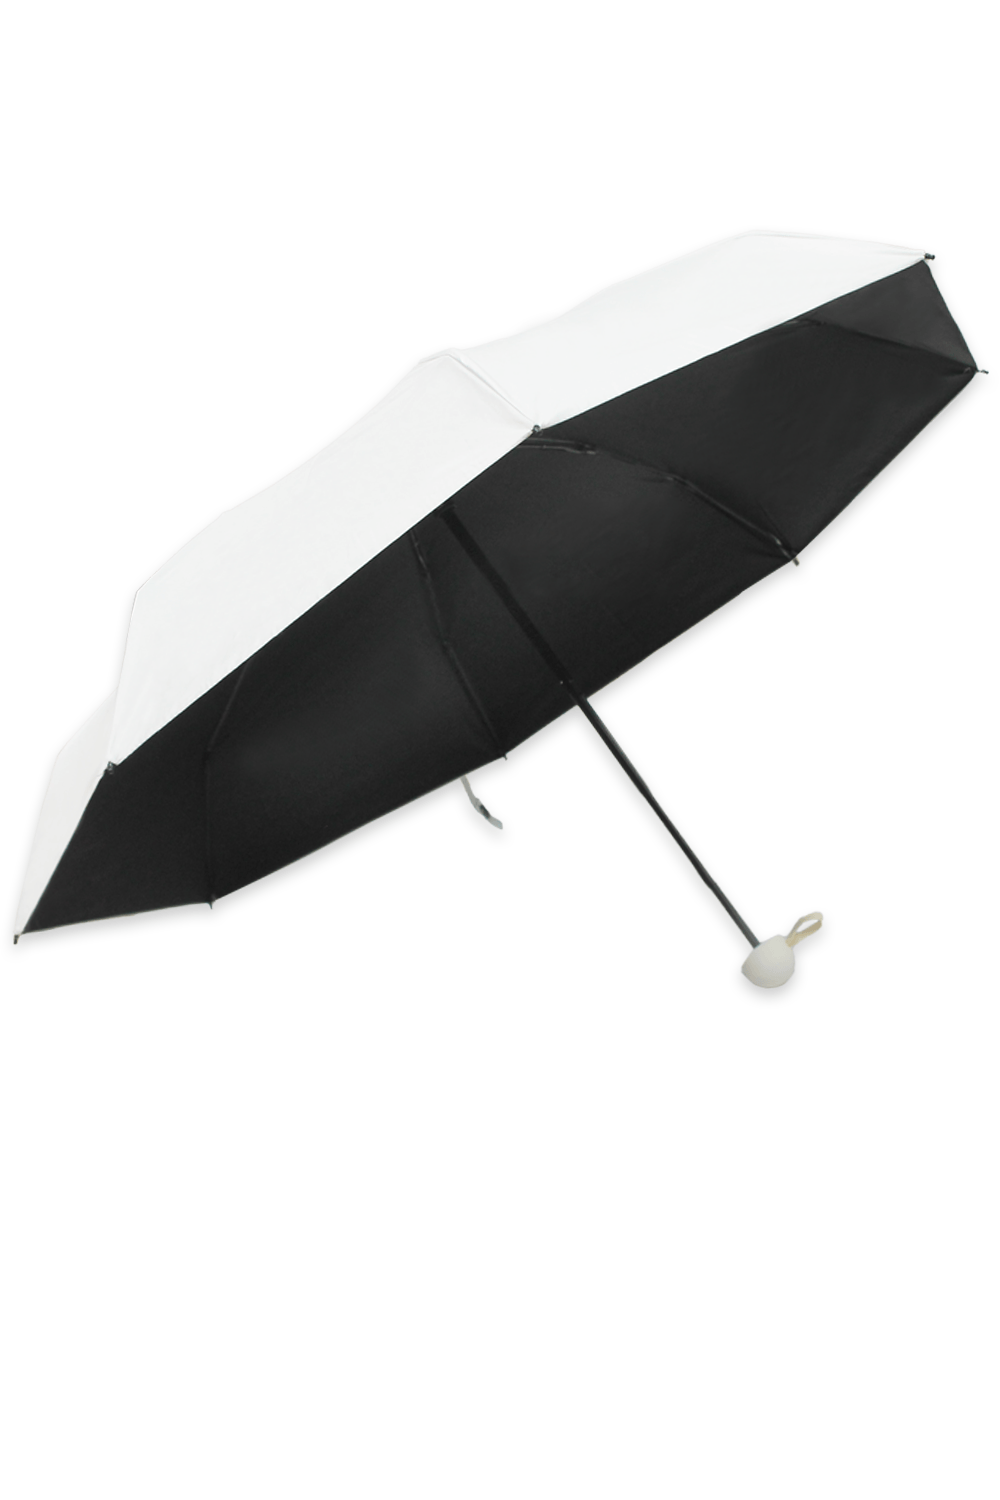 Tiffany Umbrella Ivory Umbrella